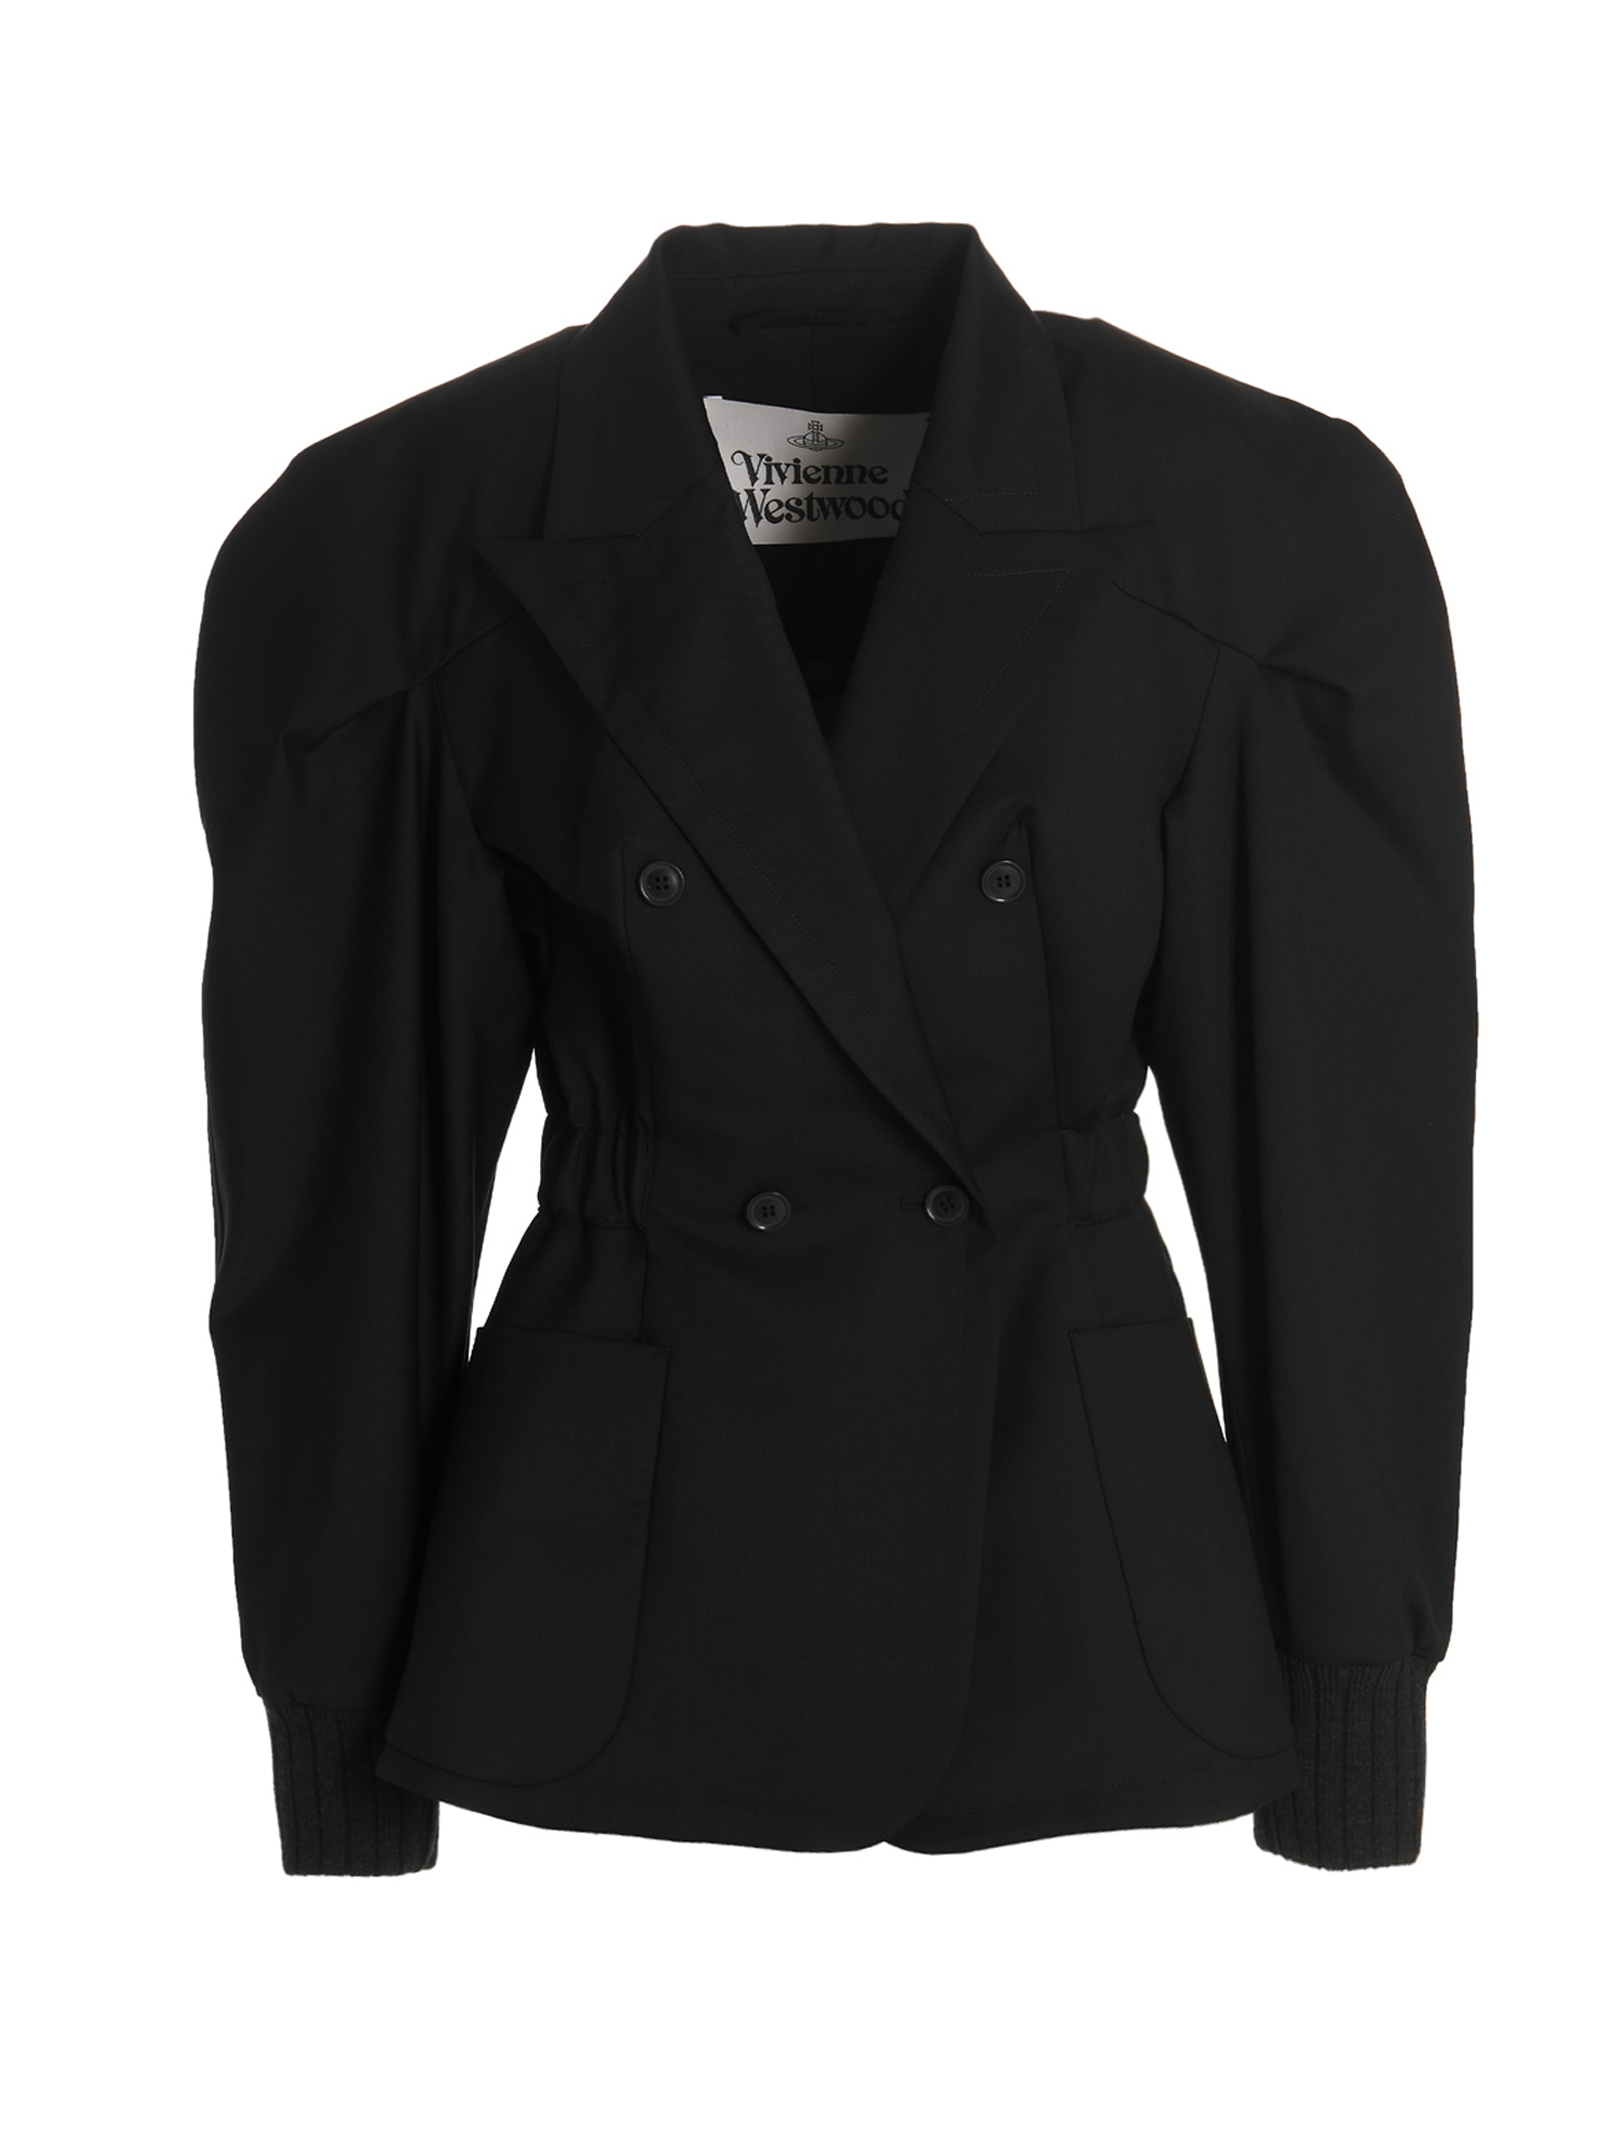 Vestes Pour Femme - Vivienne Westwood - En Wool Black - Taille:  -